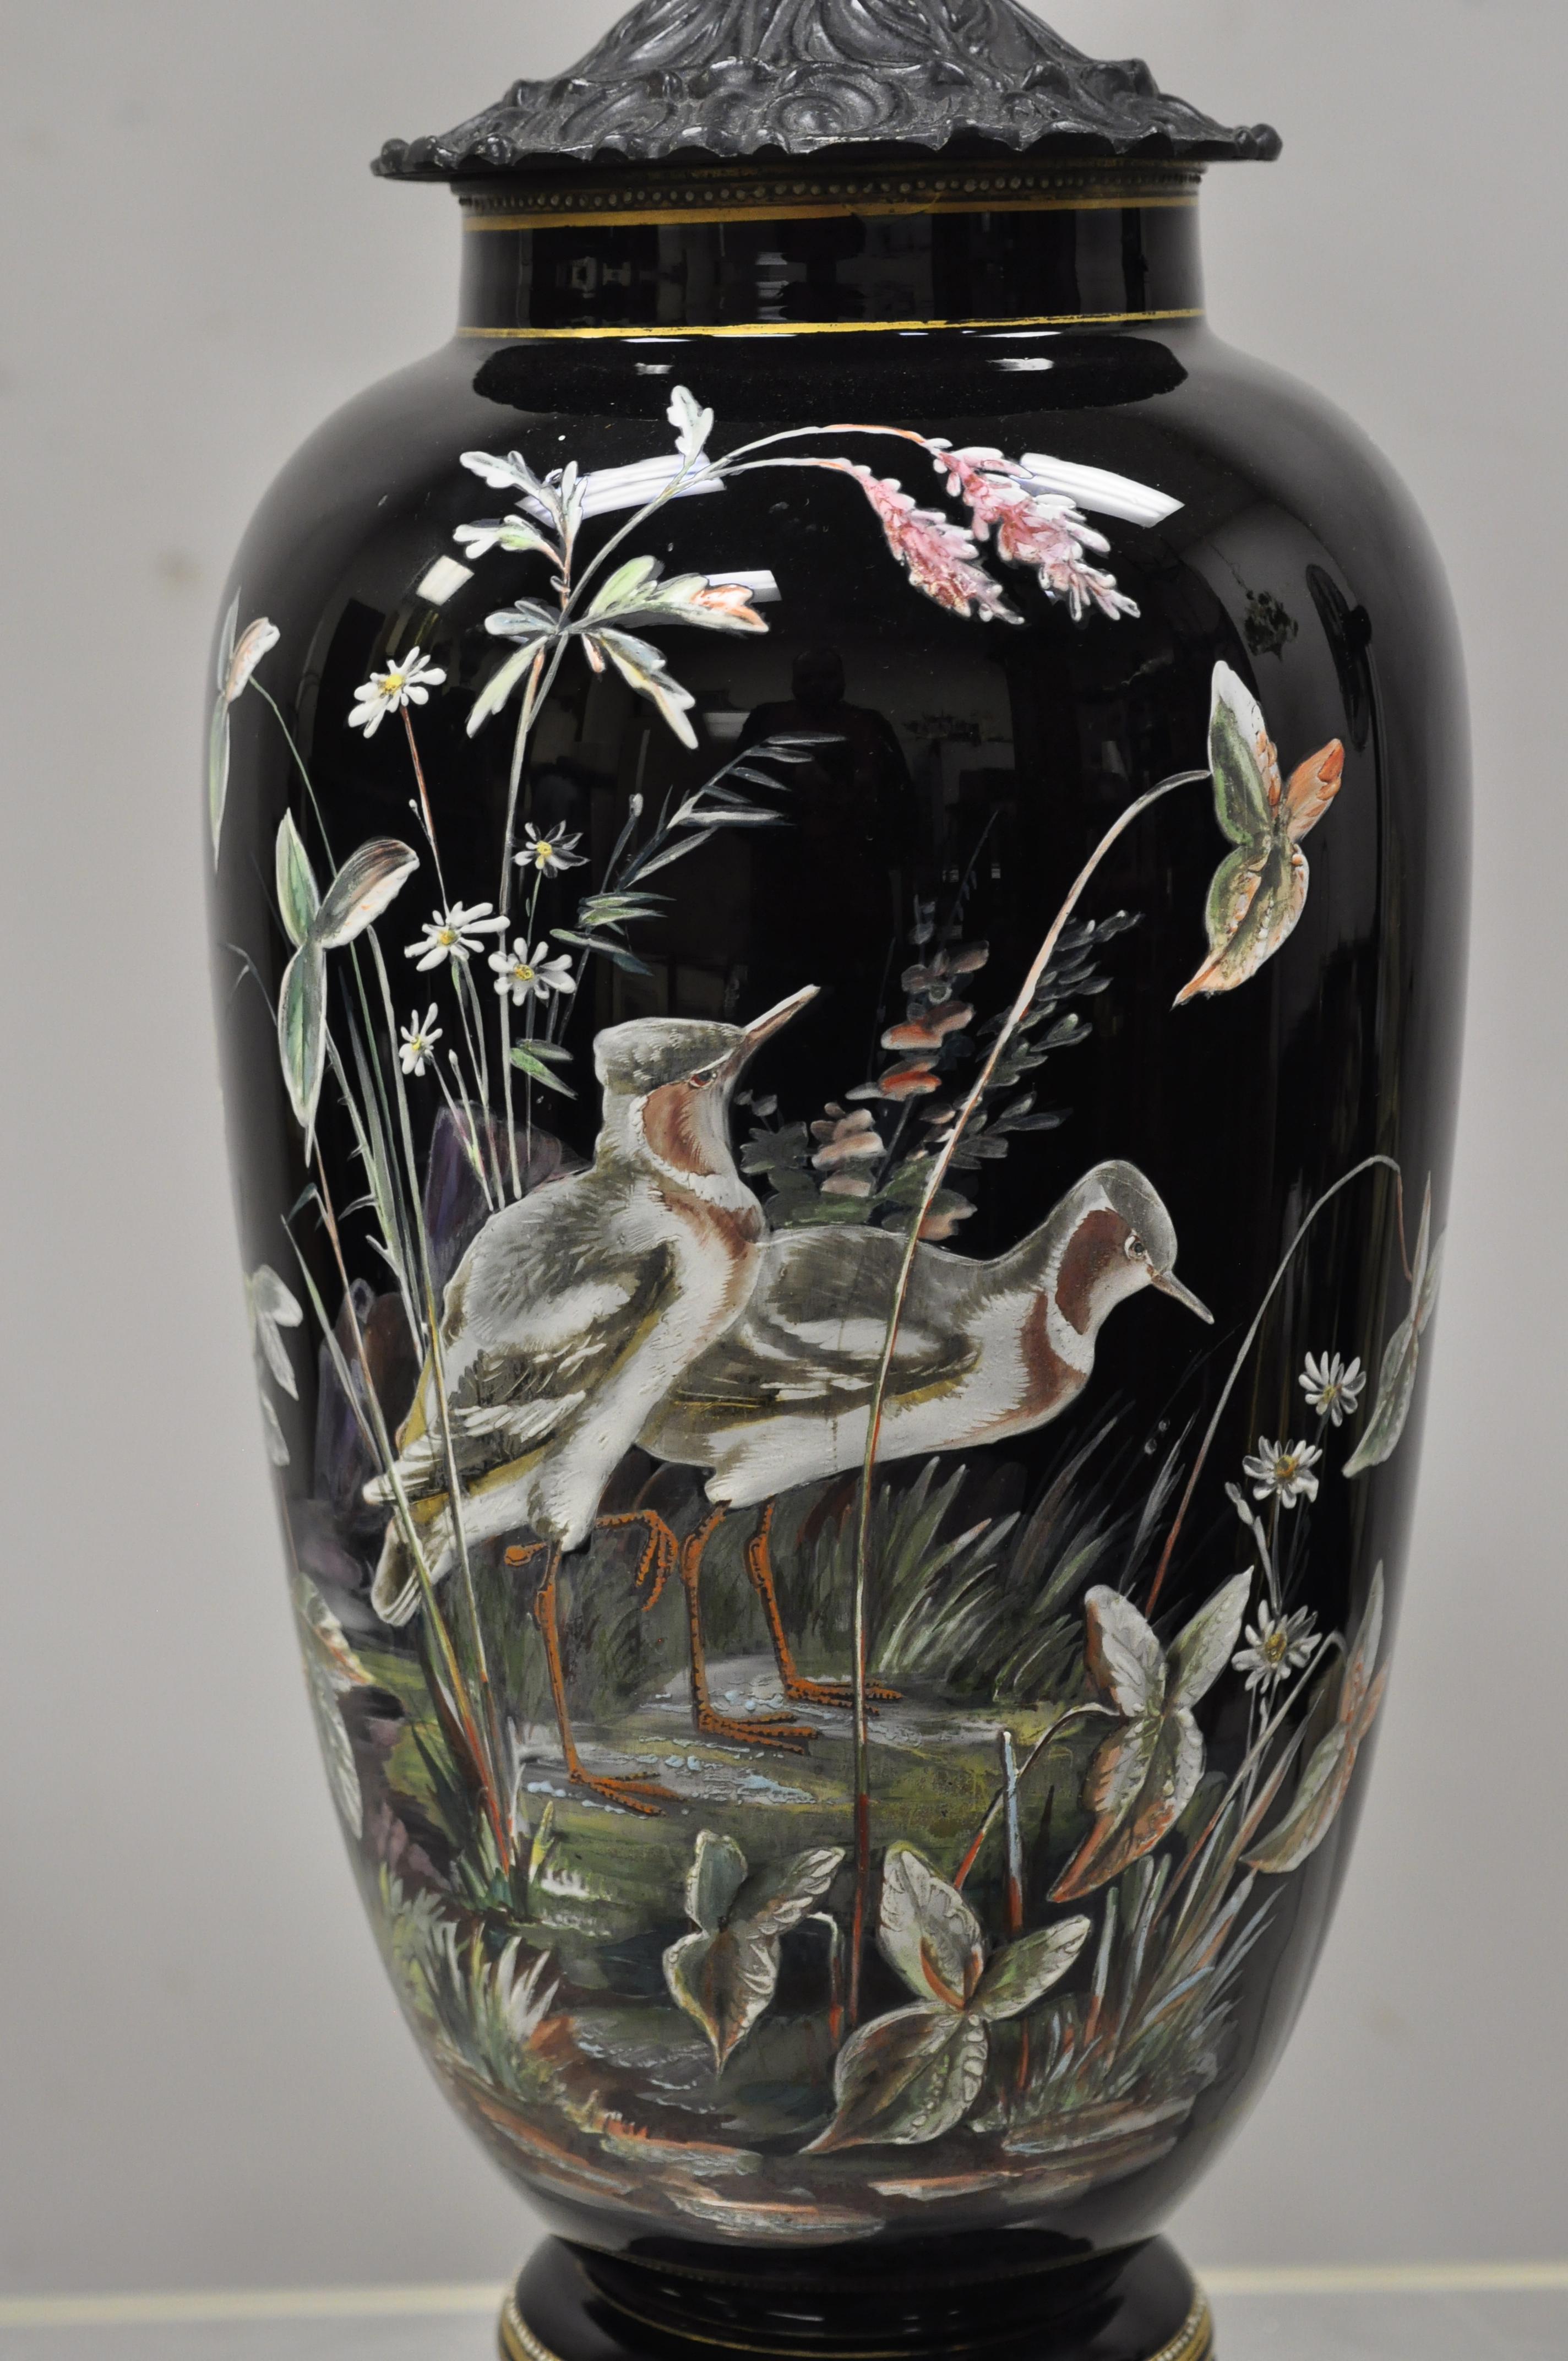 Lampe de table antique chinoise de chinoiserie en porcelaine céramique noire jardinière oiseau peint. L'article présente une base en bois massif sculpté de motifs floraux, un corps en porcelaine/céramique avec des scènes d'oiseaux et de plantes